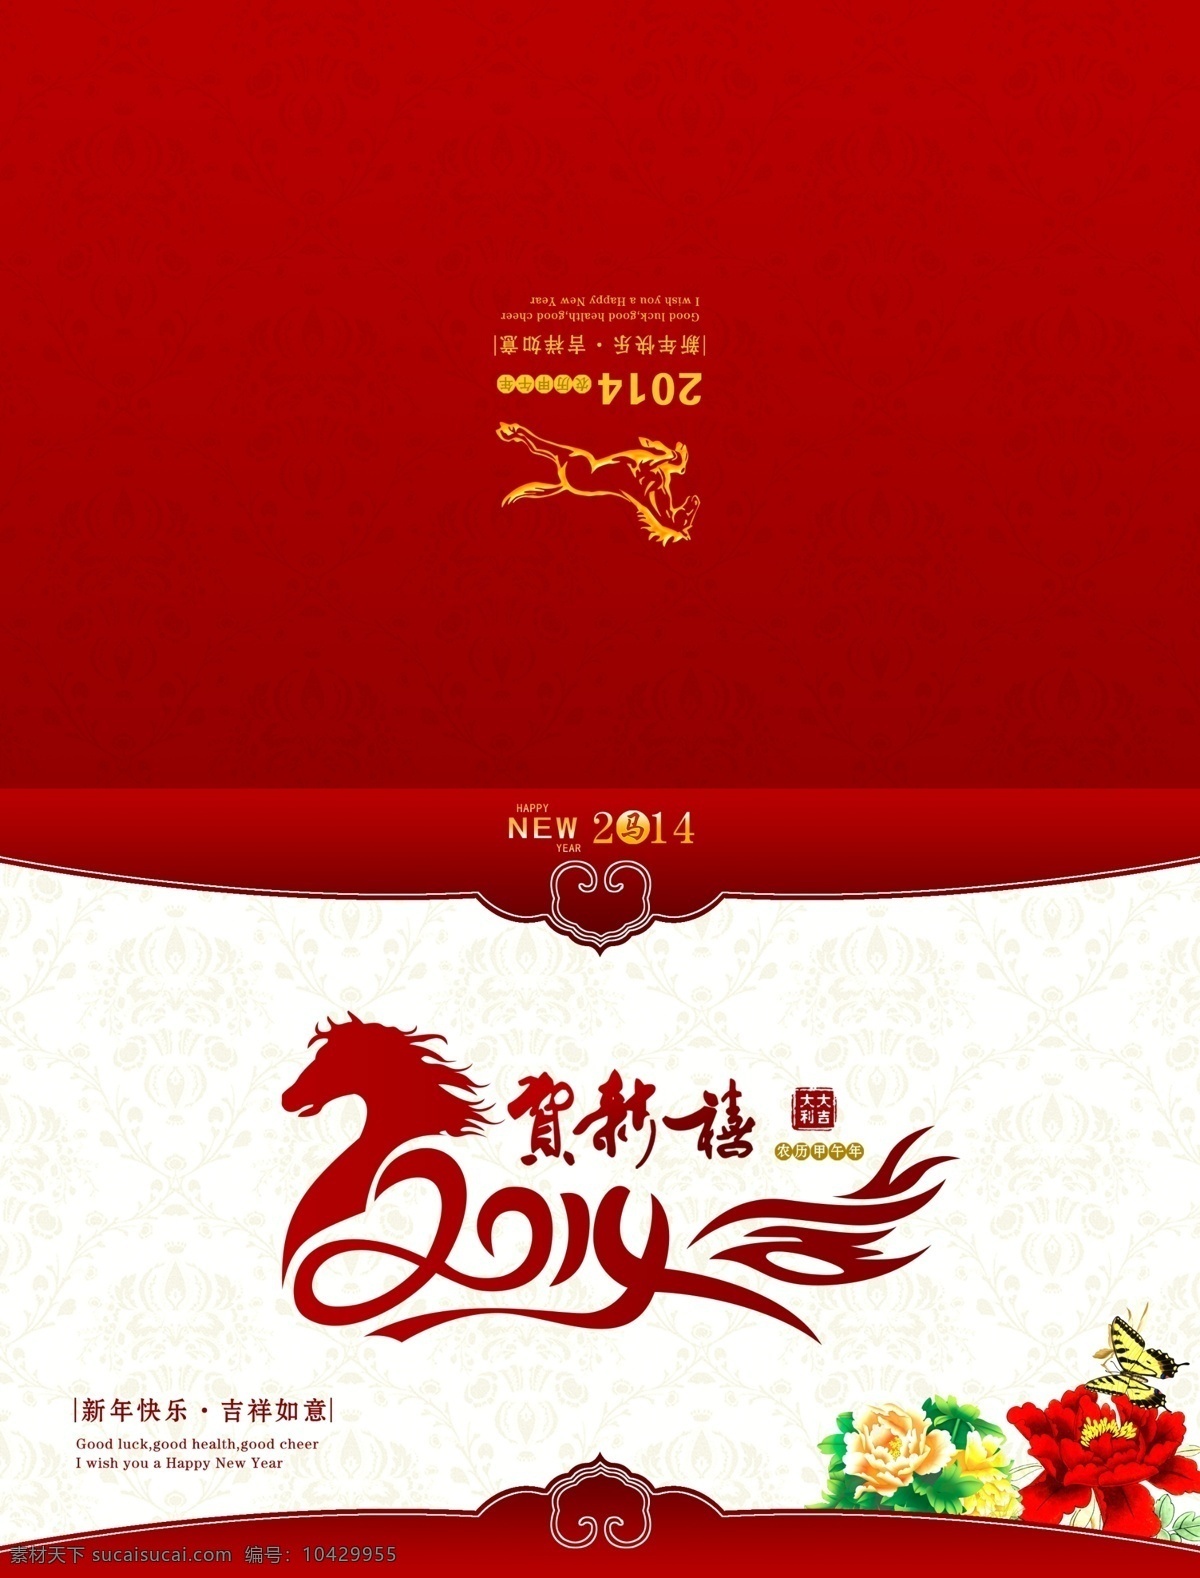 红色 马年 节日 创意 贺卡 psd素材 创意马年标志 模板 红色背景 节日素材 2015羊年